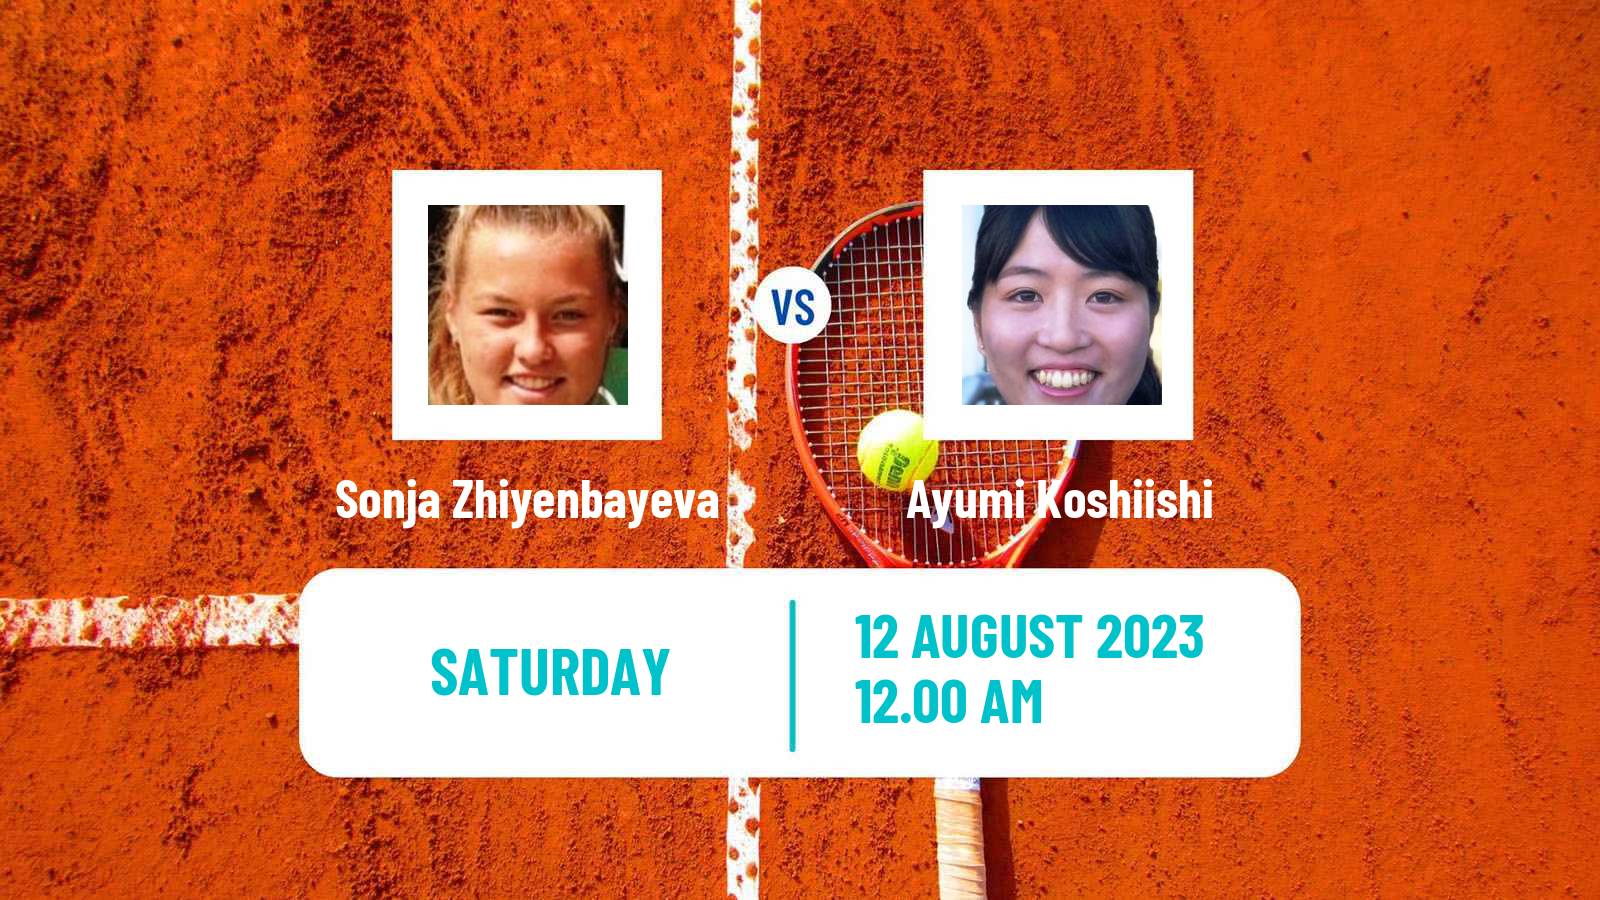 Tennis ITF W15 Ust Kamenogorsk Women Sonja Zhiyenbayeva - Ayumi Koshiishi